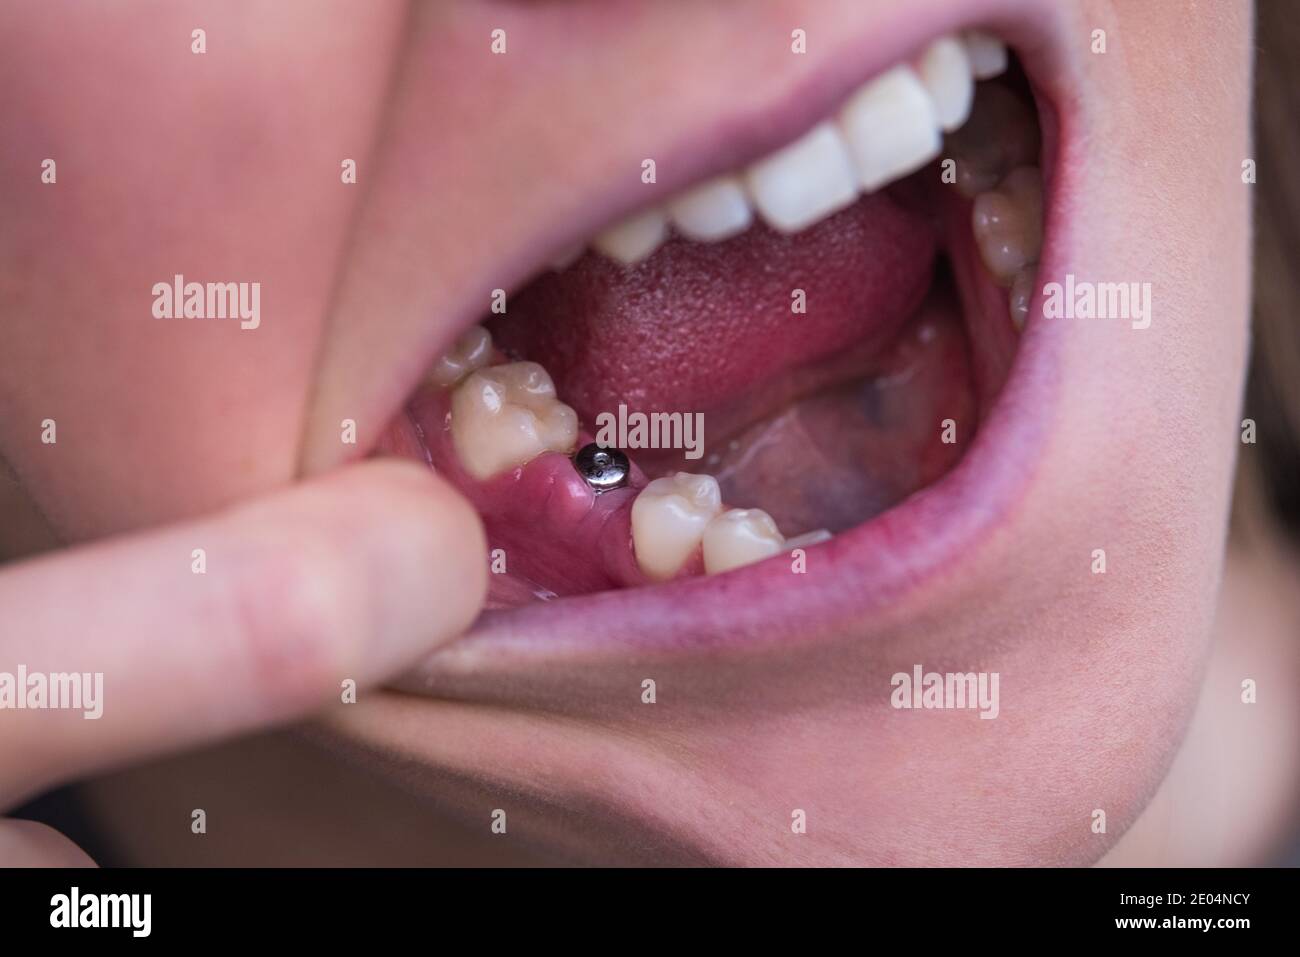 Giovane donna senza dente sulla mascella inferiore. Dente mancante. In attesa dell'impianto dopo l'estrazione del dente. Foto Stock